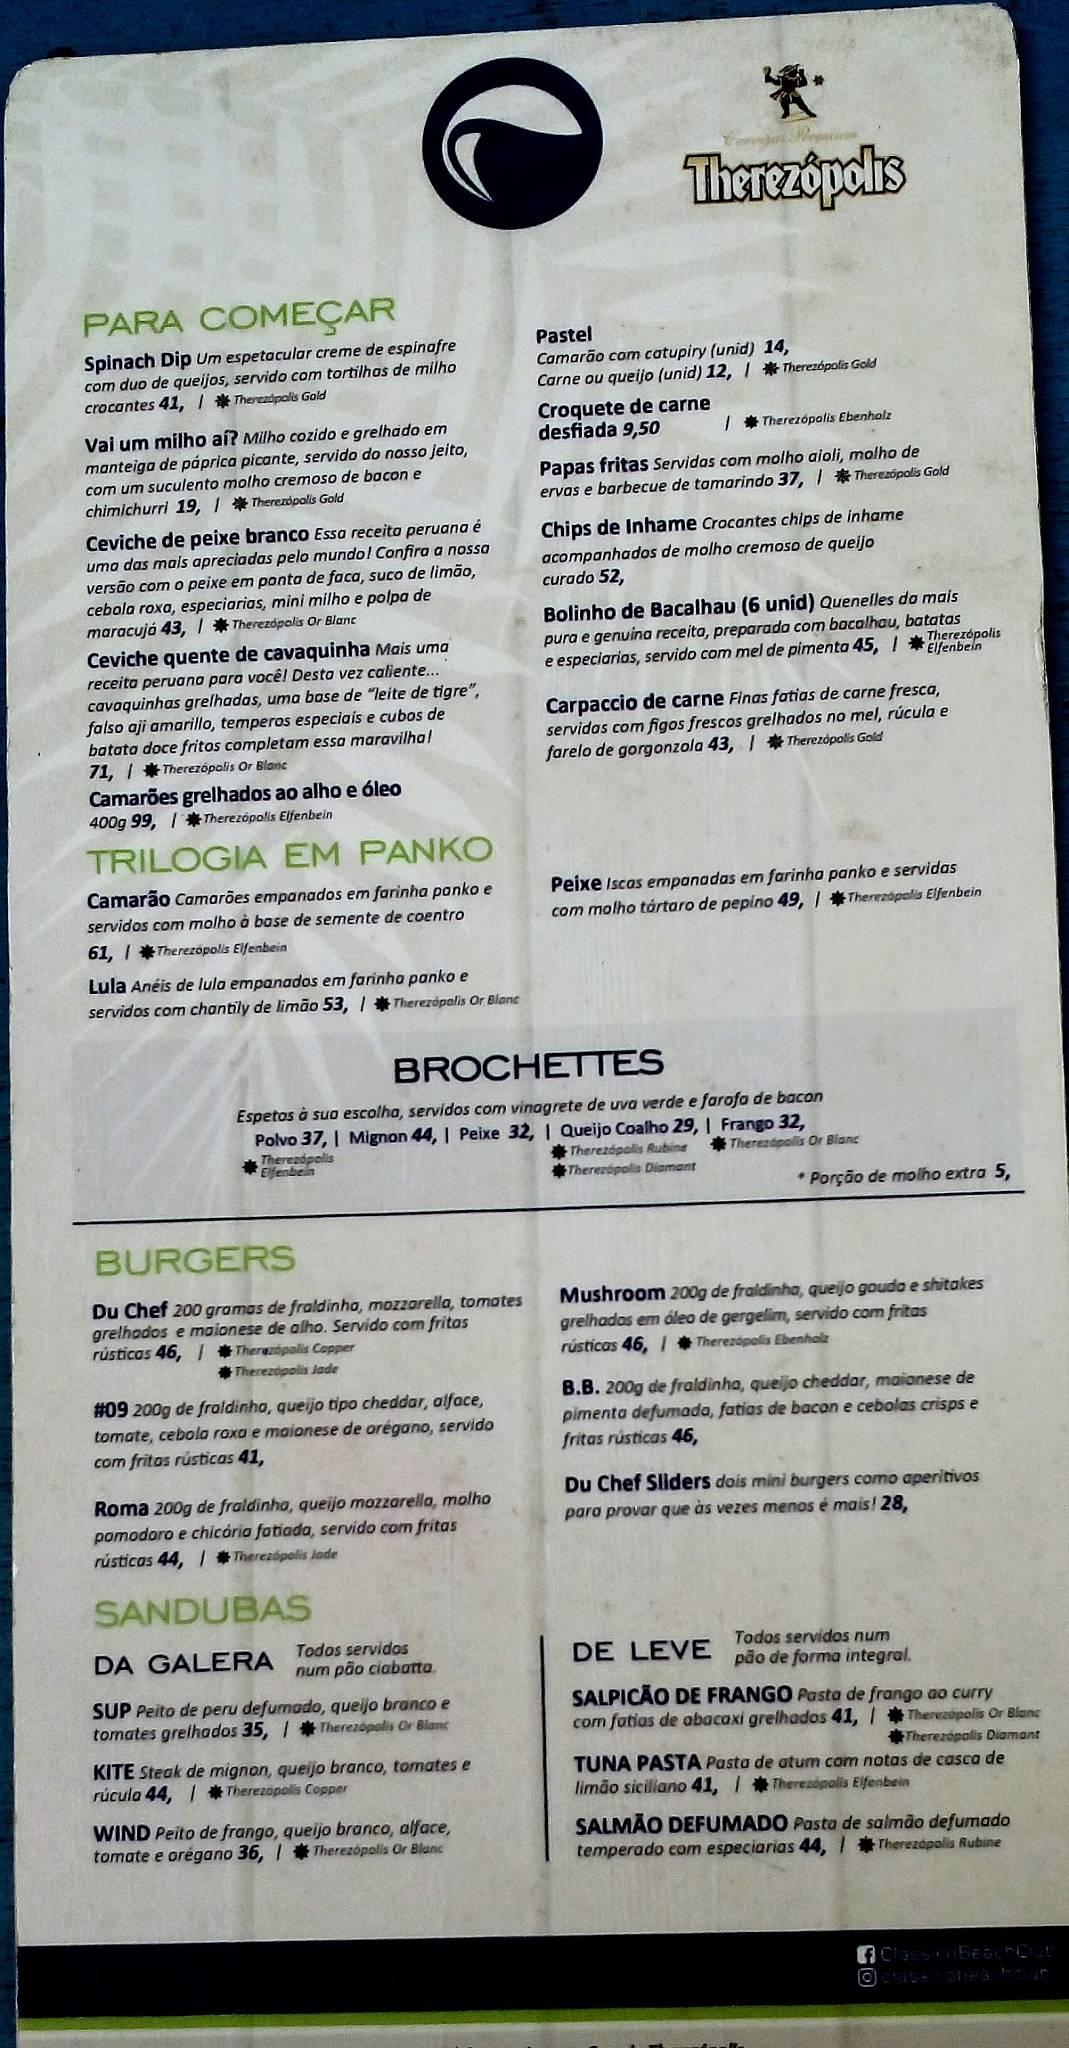 Clássico Beach Club - Urca, Rio de Janeiro - Restaurant menu and reviews